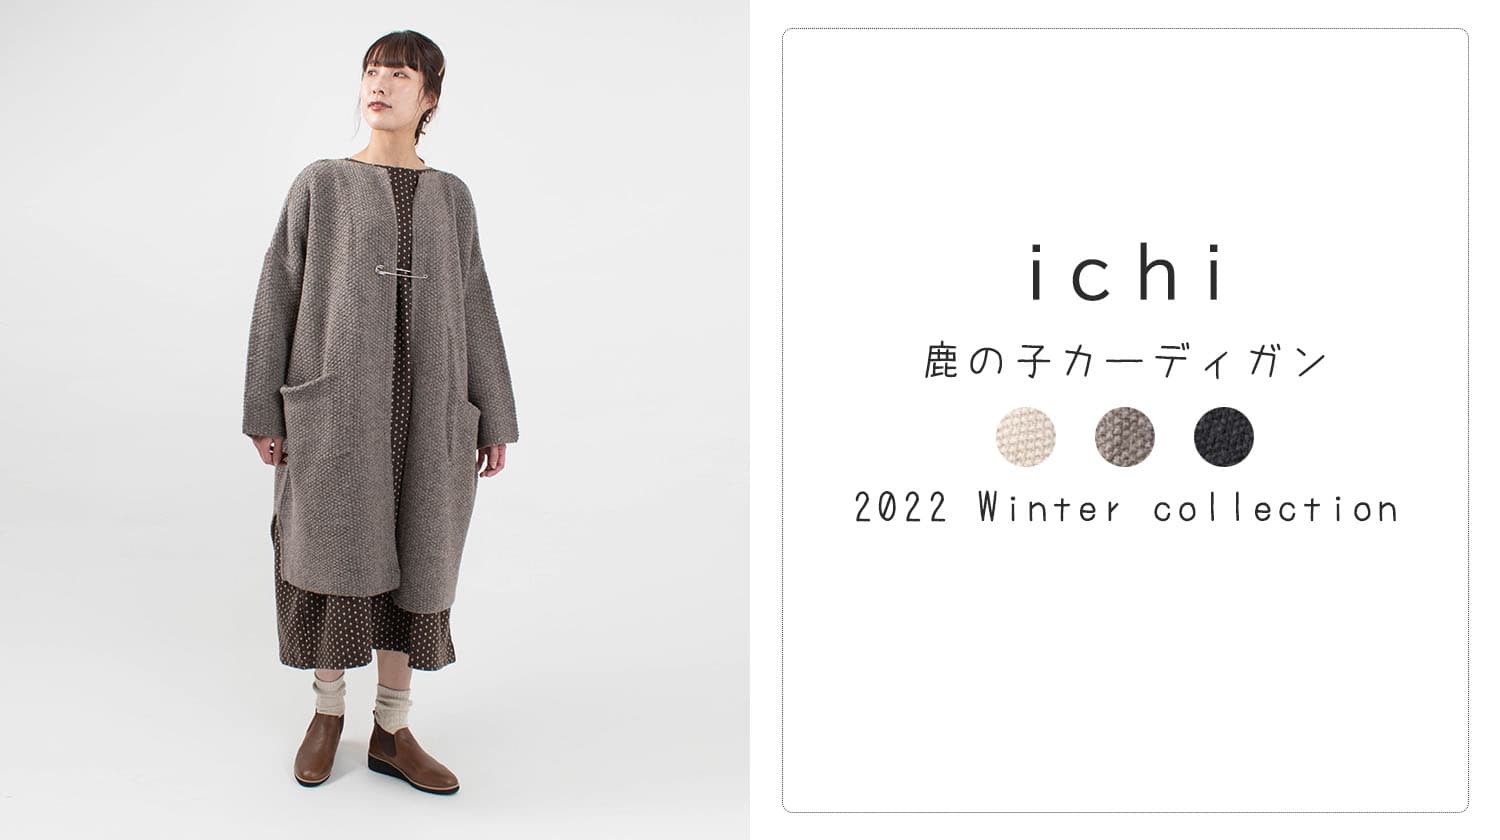 毎年人気のカーディガン【ichi】 - ナチュラル服のセレクト